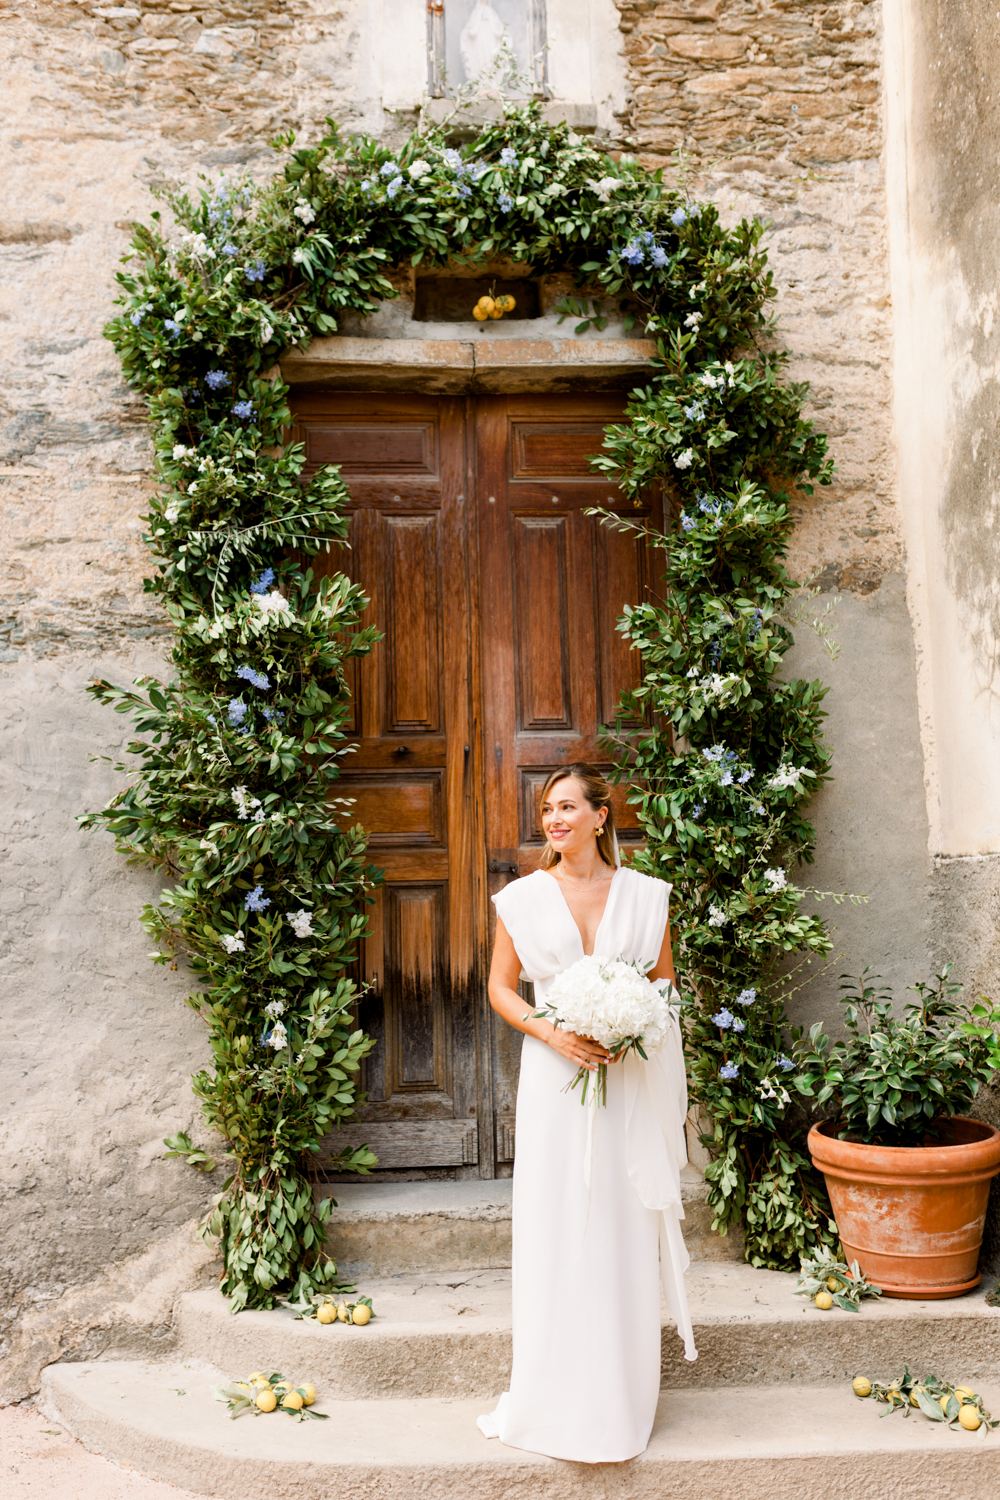 Mariage en Corse au Domaine de Vignale © Vincent Pennachio